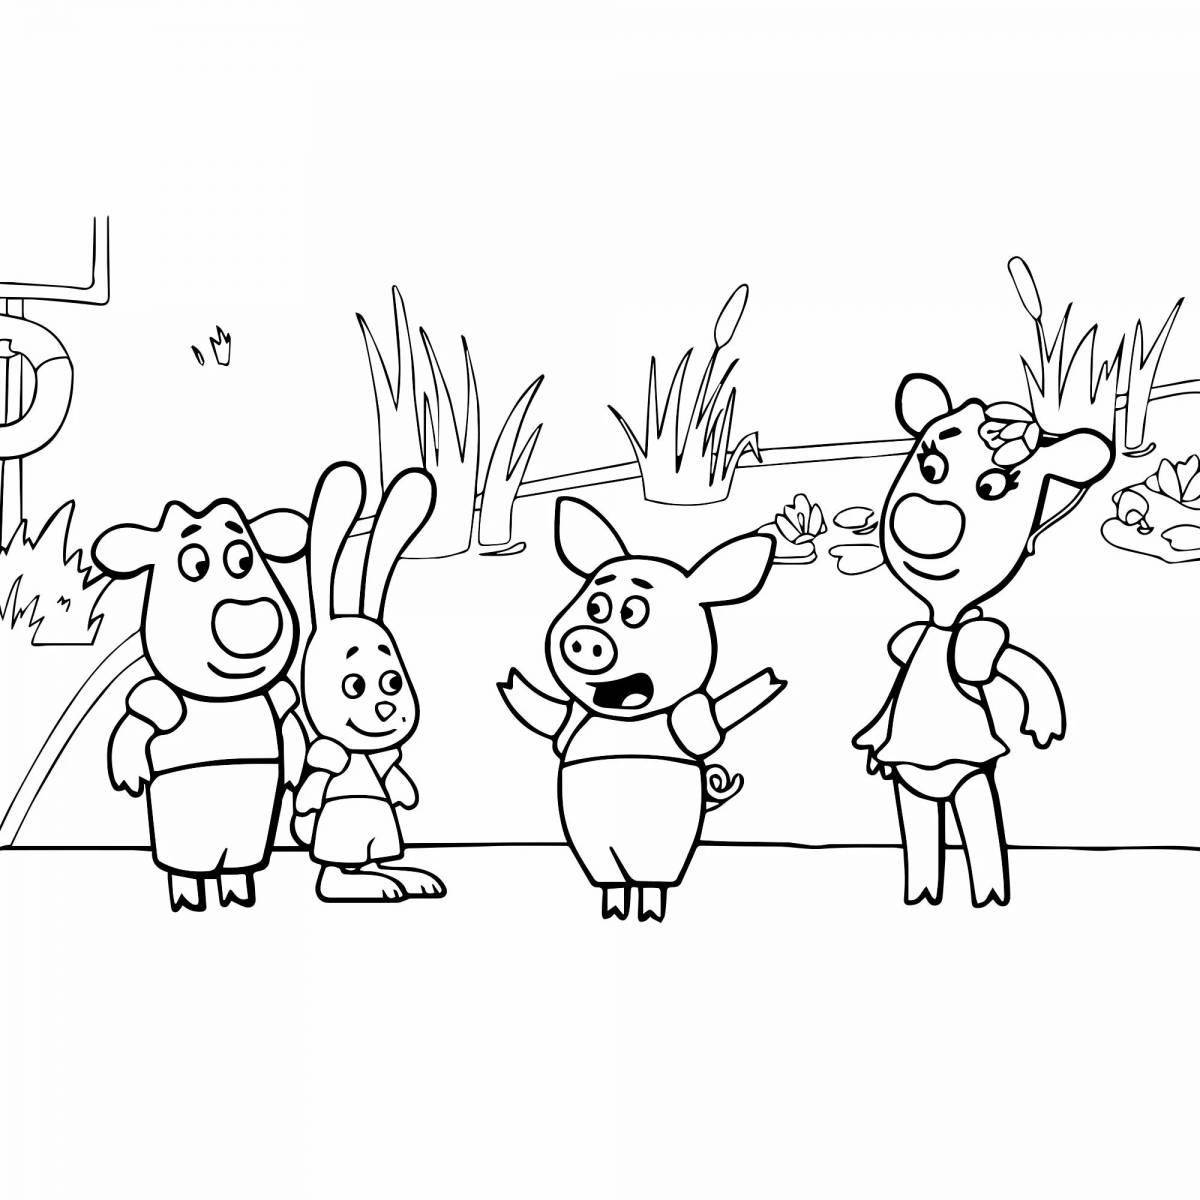 Креативные мультяшные персонажи раскраски для детей 3-4 лет